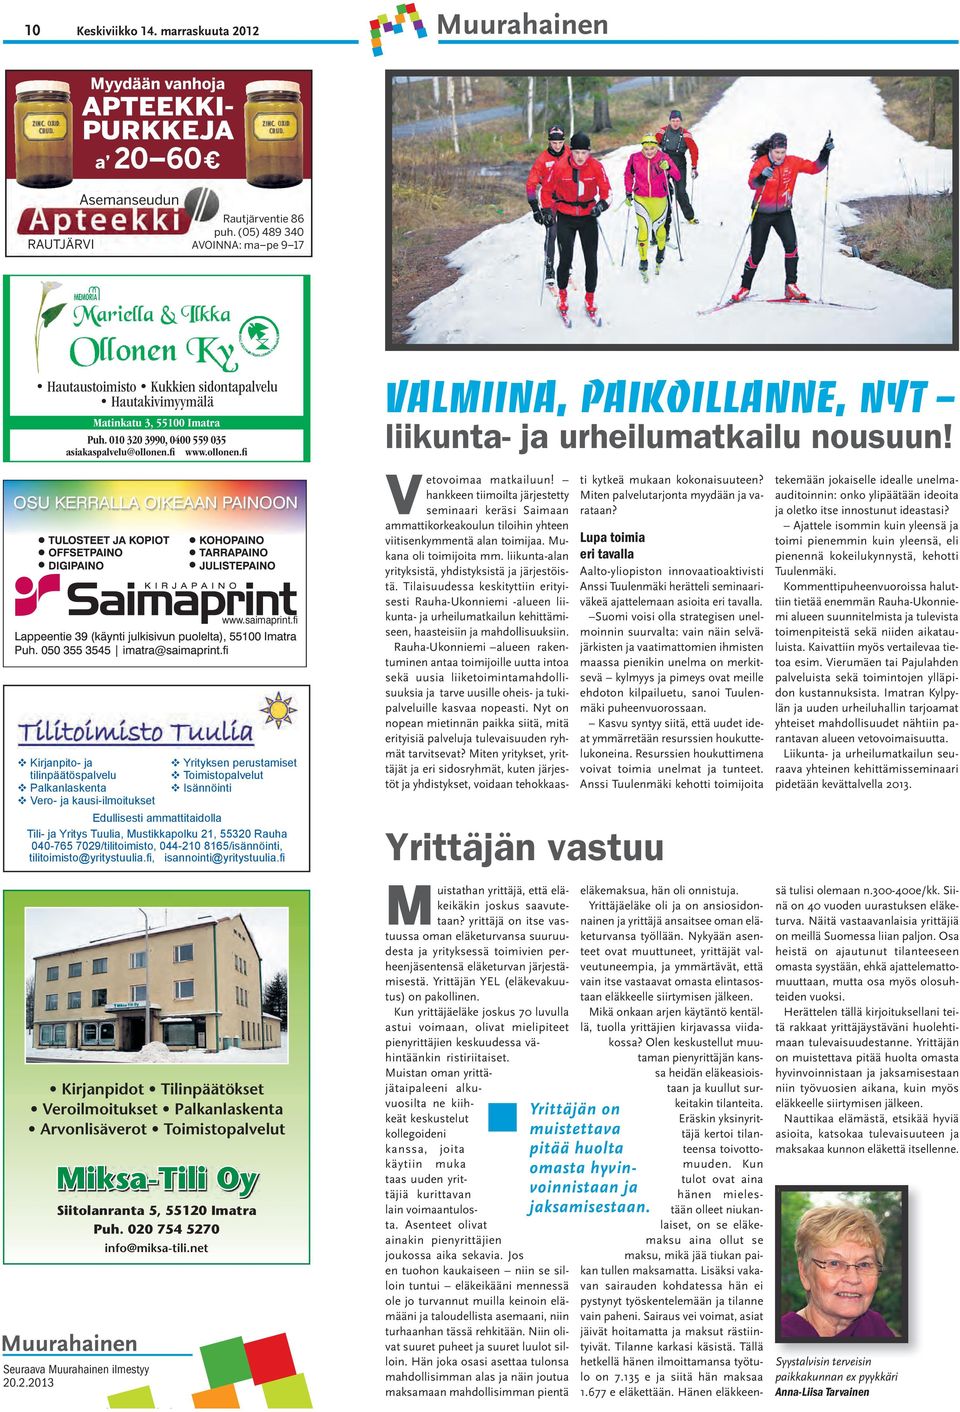 fi www.ollonen.fi Valmiina, paikoillanne, nyt liikunta- ja urheilumatkailu nousuun!